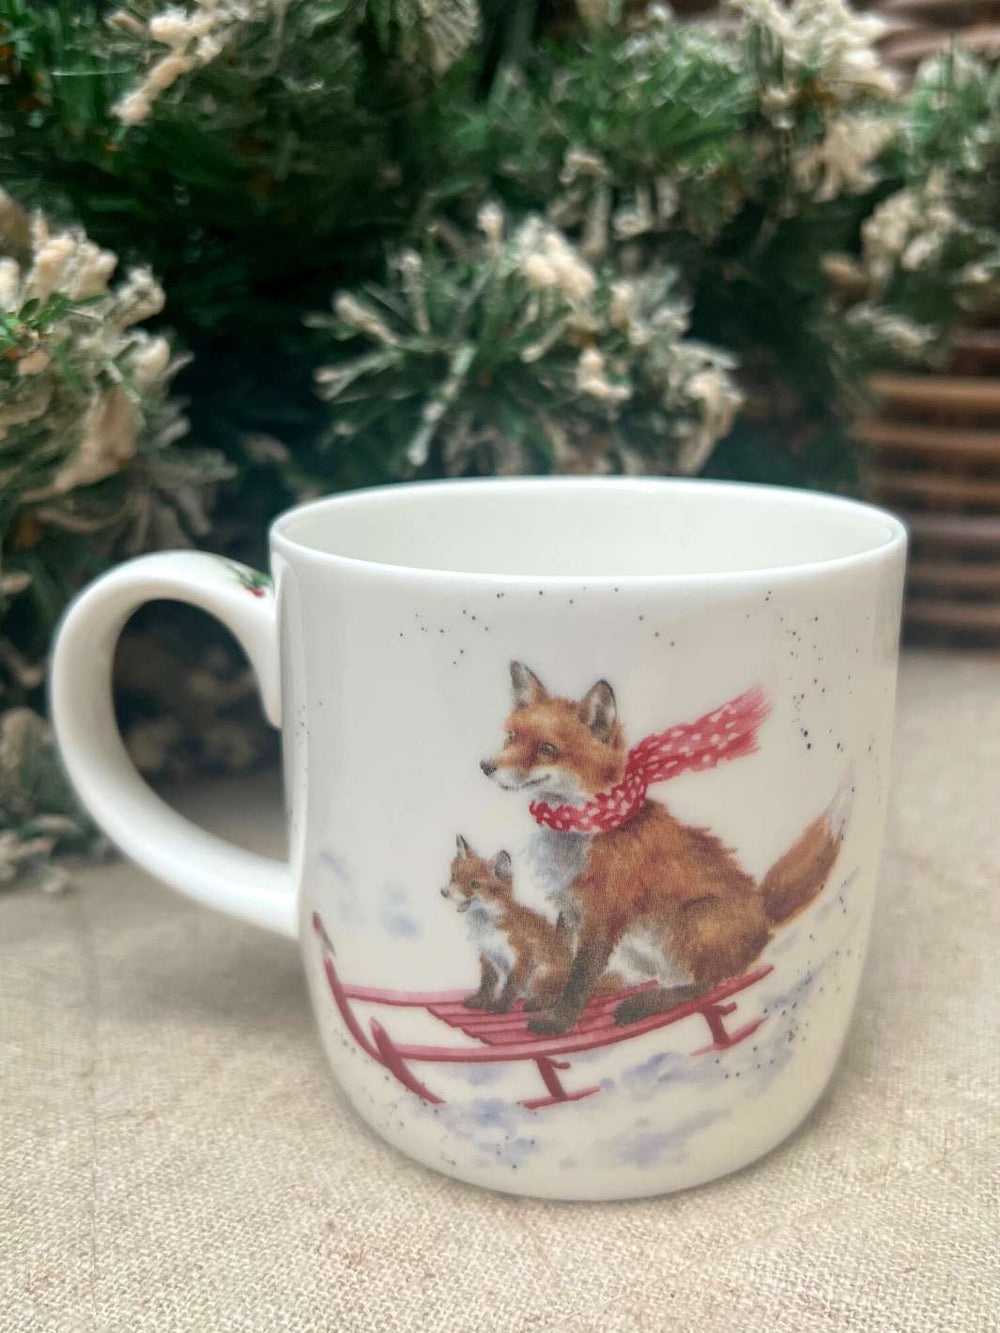 Wrendale Designs Tasse mit einem Fuchs-Motiv. Die Füchse fahren auf einem Schlitten im Schnee.